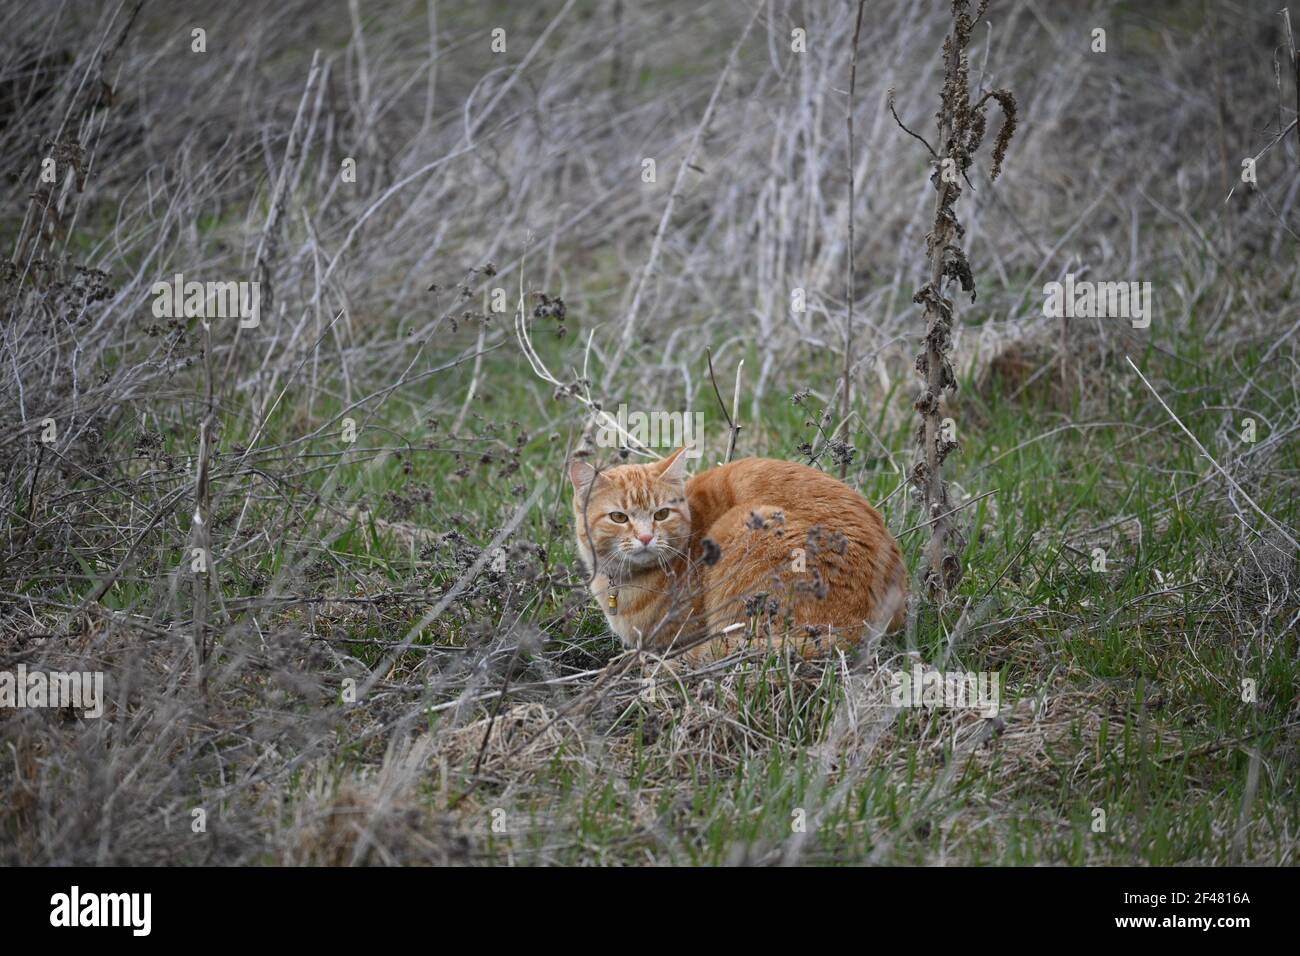 Un chat orange dans un champ Banque D'Images